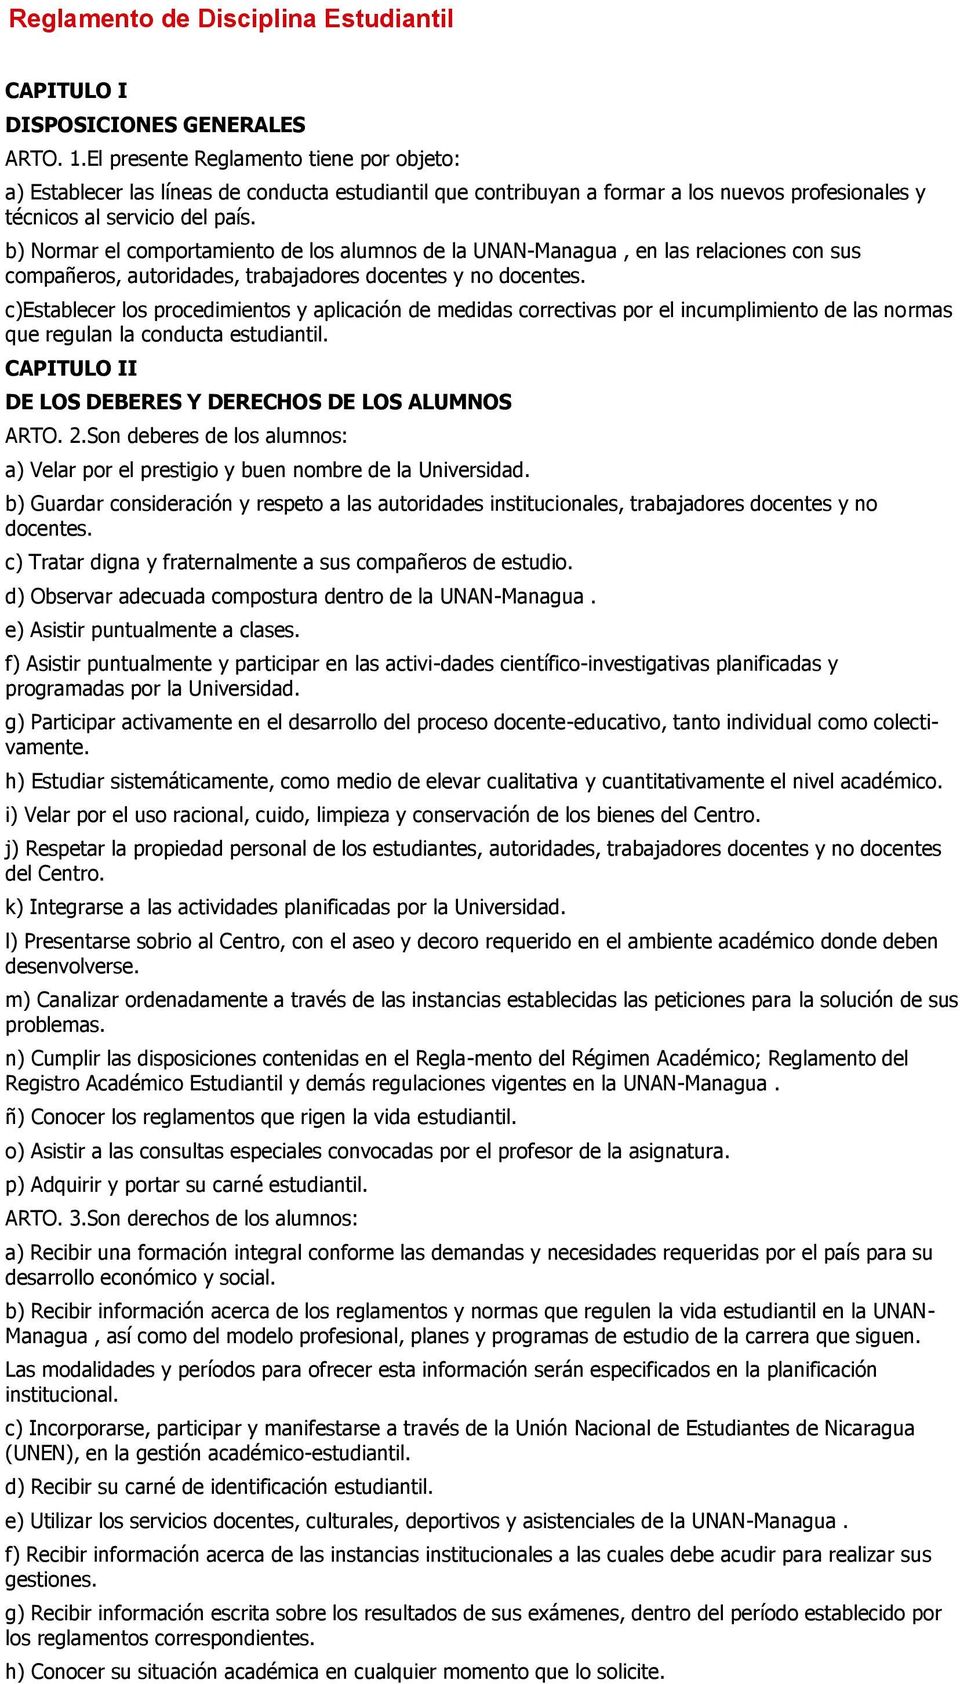 b) Normar el comportamiento de los alumnos de la UNAN-Managua, en las relaciones con sus compañeros, autoridades, trabajadores docentes y no docentes.